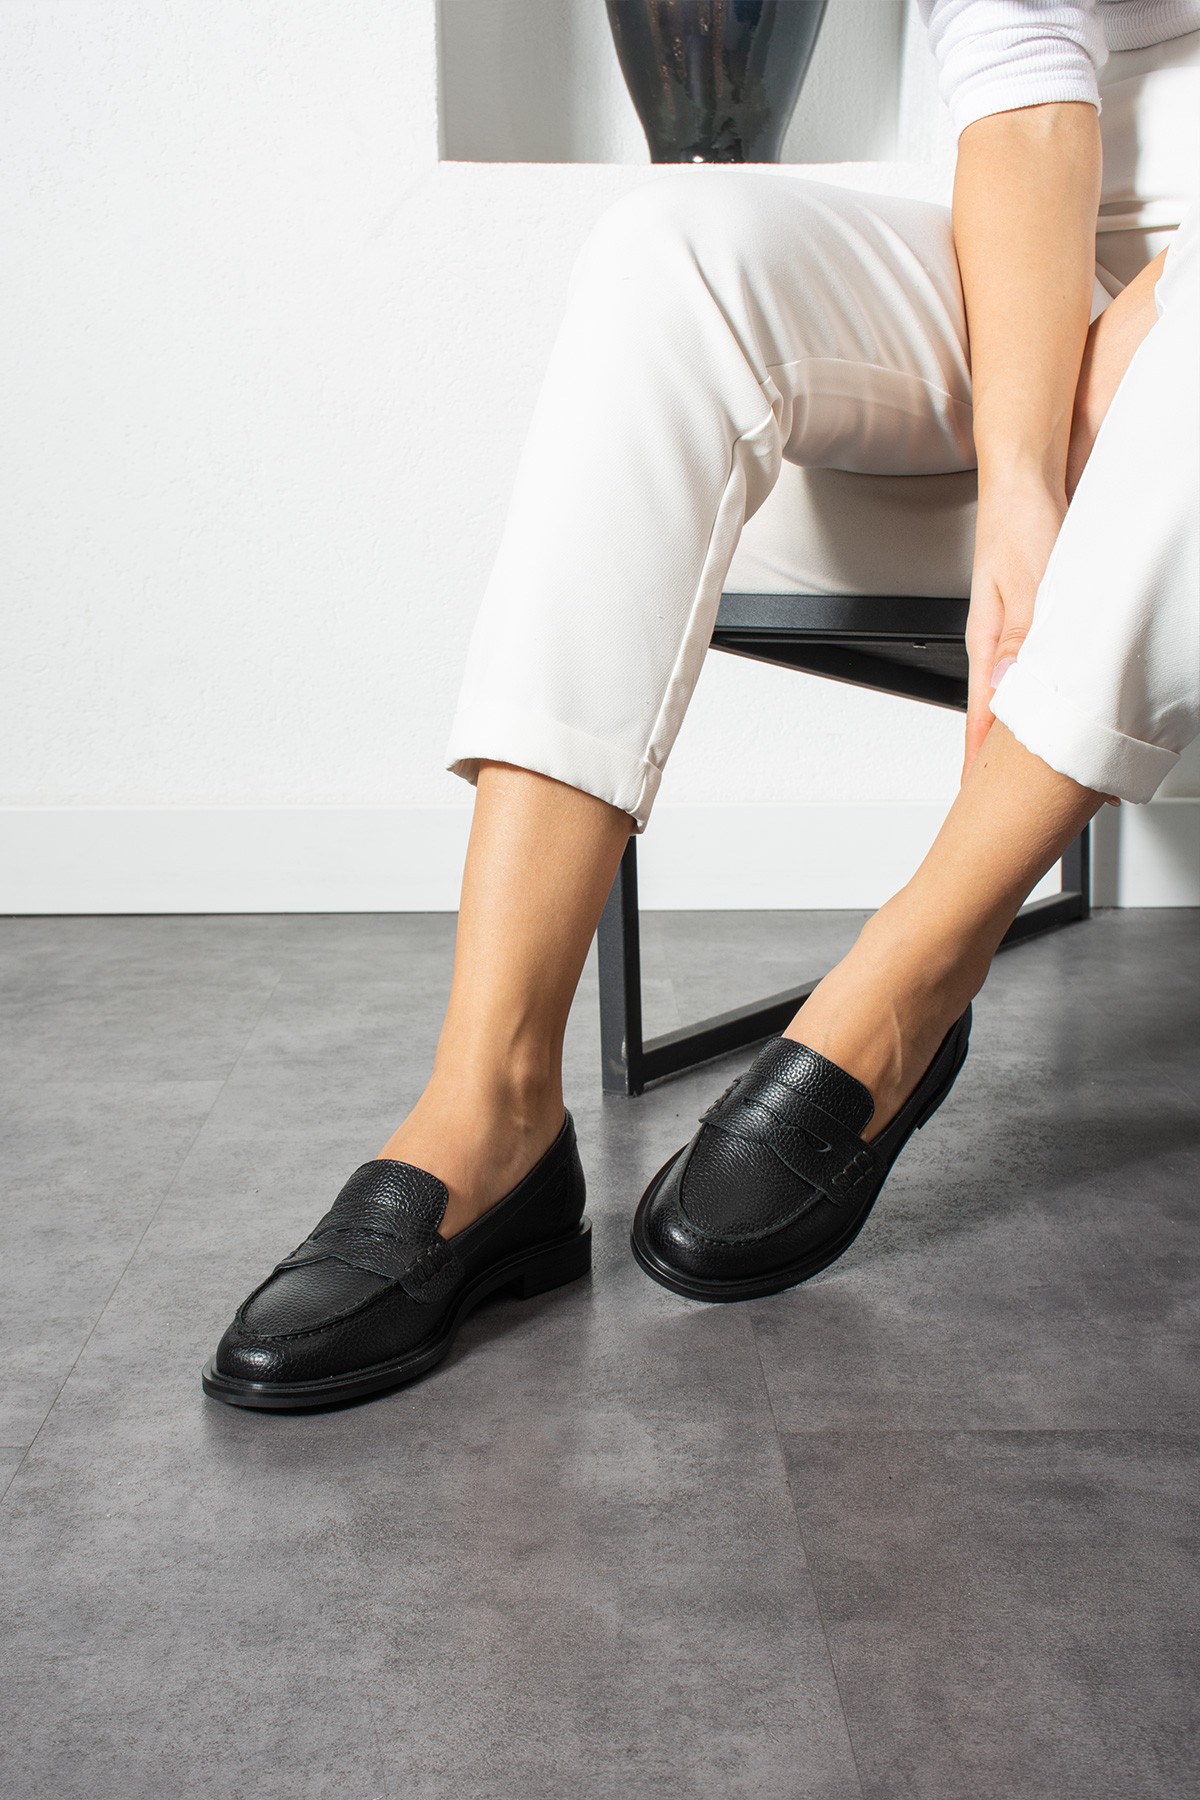 Stew Kadın Hakiki Deri Loafer Ayakkabı